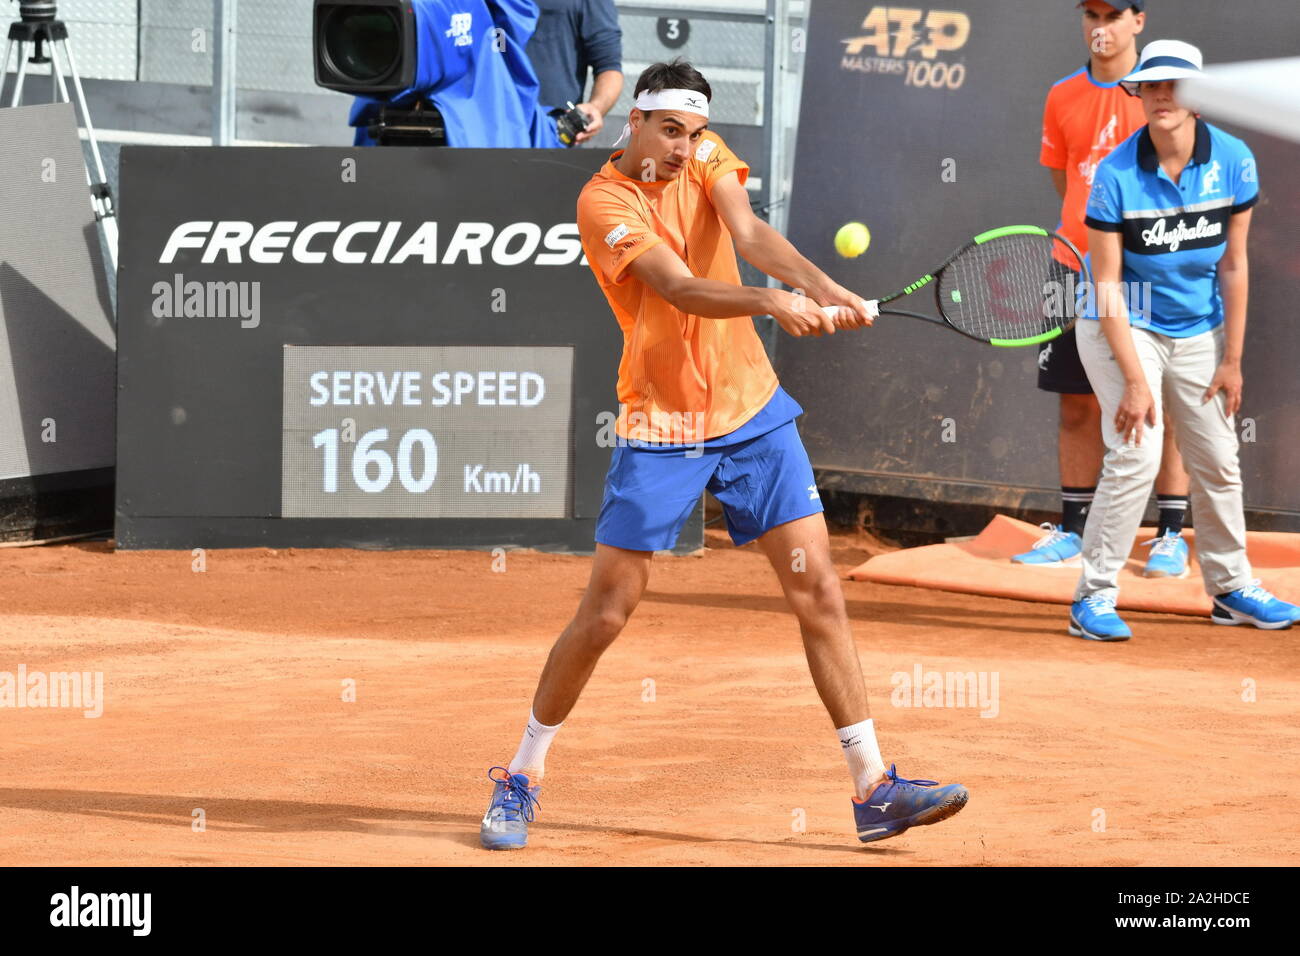 Lorenzo sonego durante Roma Internazionali BNL 2019 , roma, Italia, 13 maggio 2019, Tennis Tennis Internazionali Foto Stock